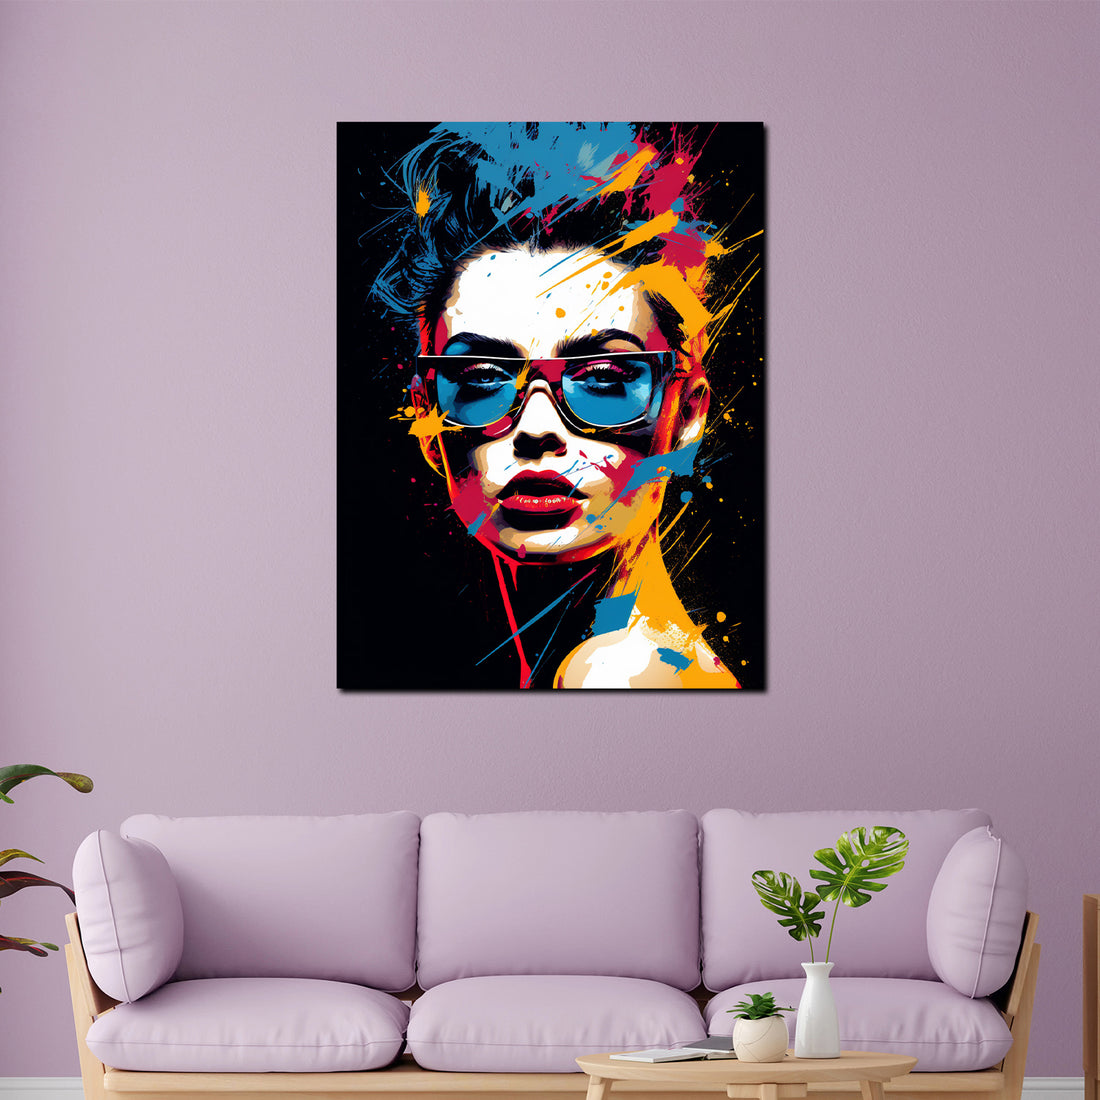 Wandbild Pop Art abstrakt Cool Girl Colour Style